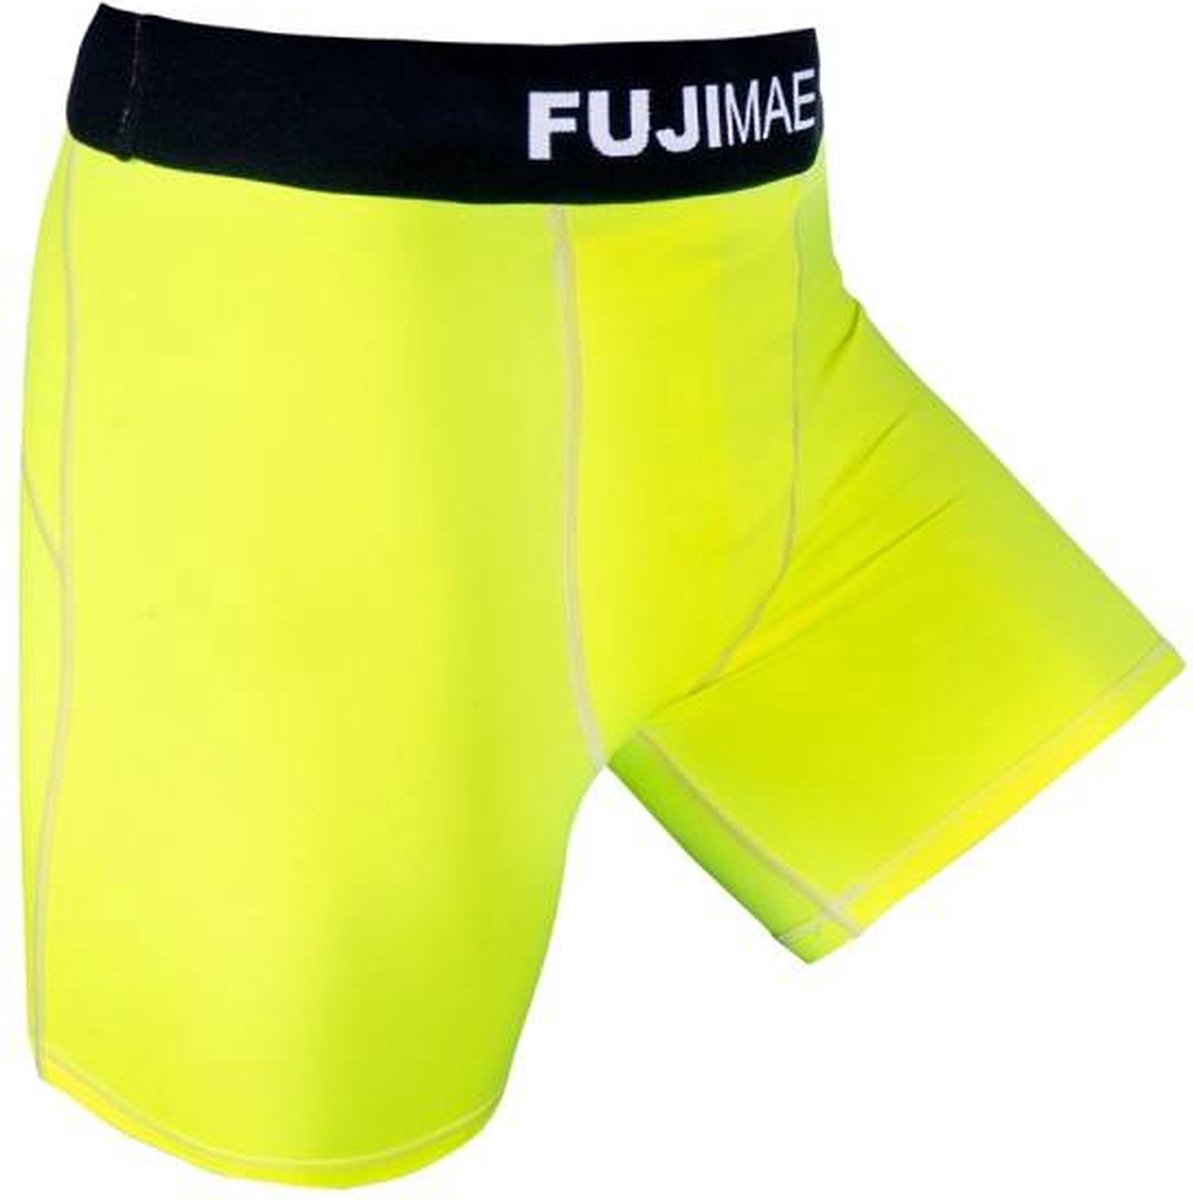 Fuji Mae Compression broekje voor cup Kleur: Neon Geel, M